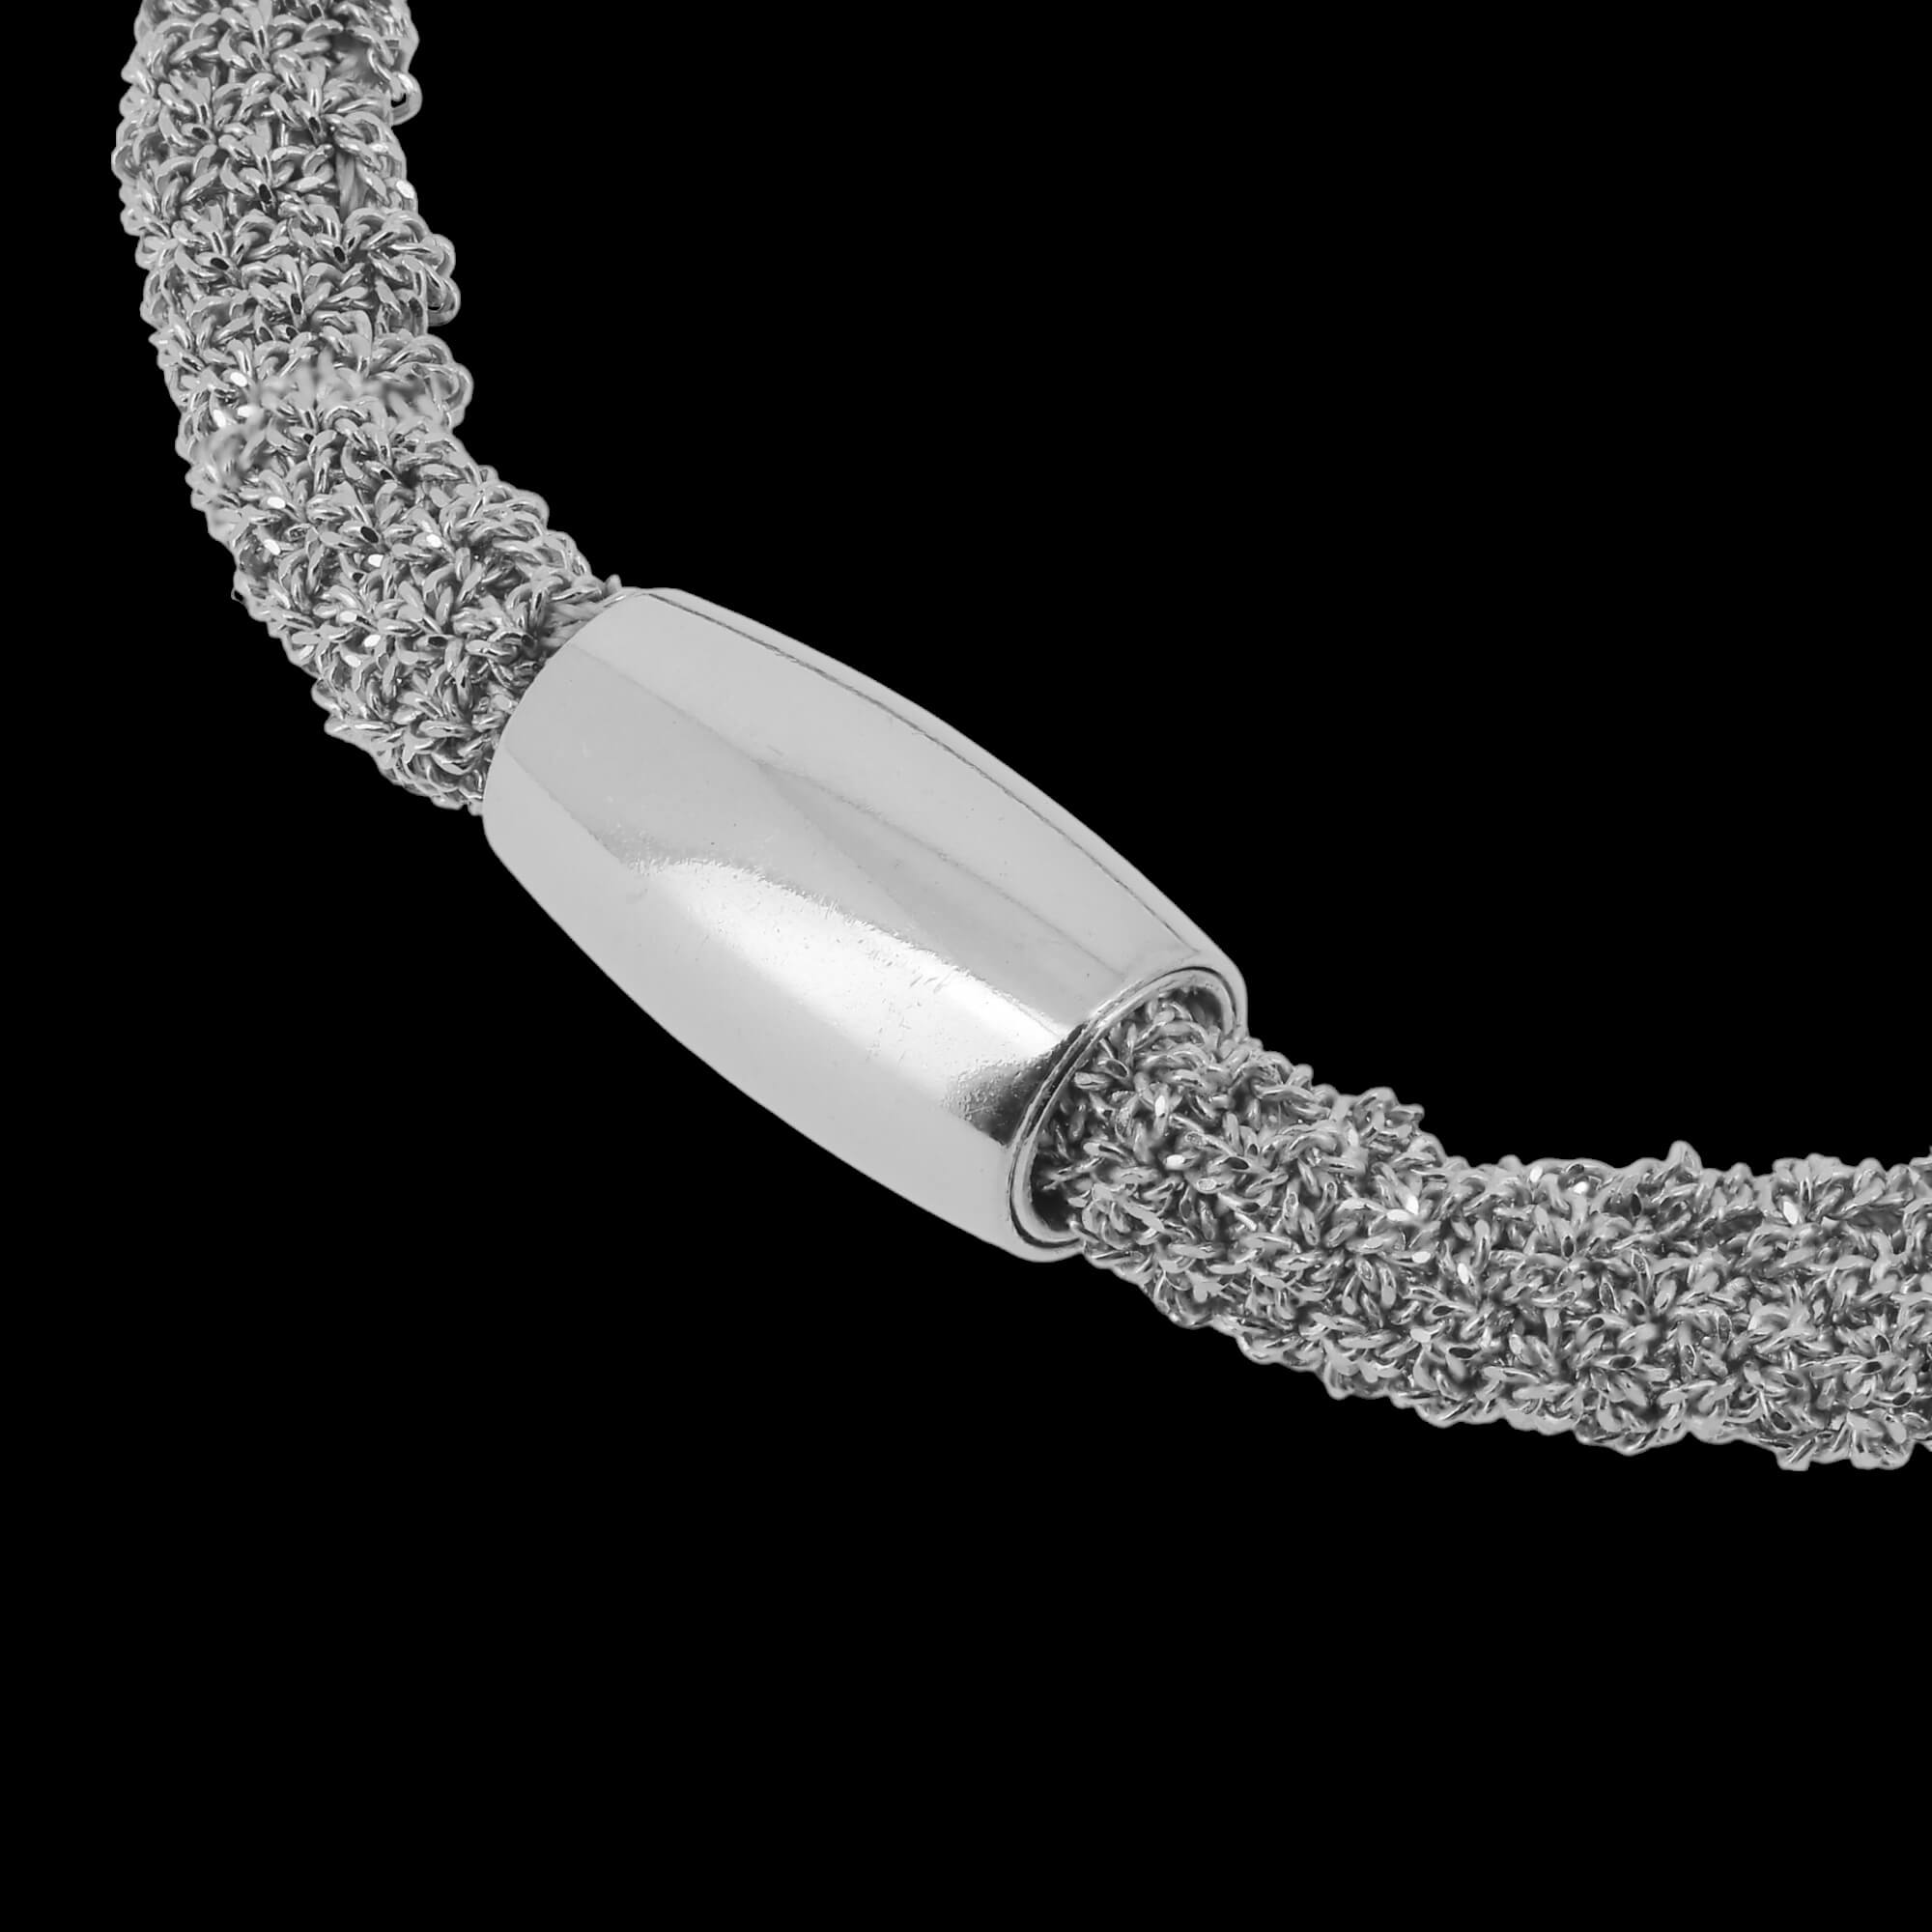 Narrow silver interwoven bracelet / heavier